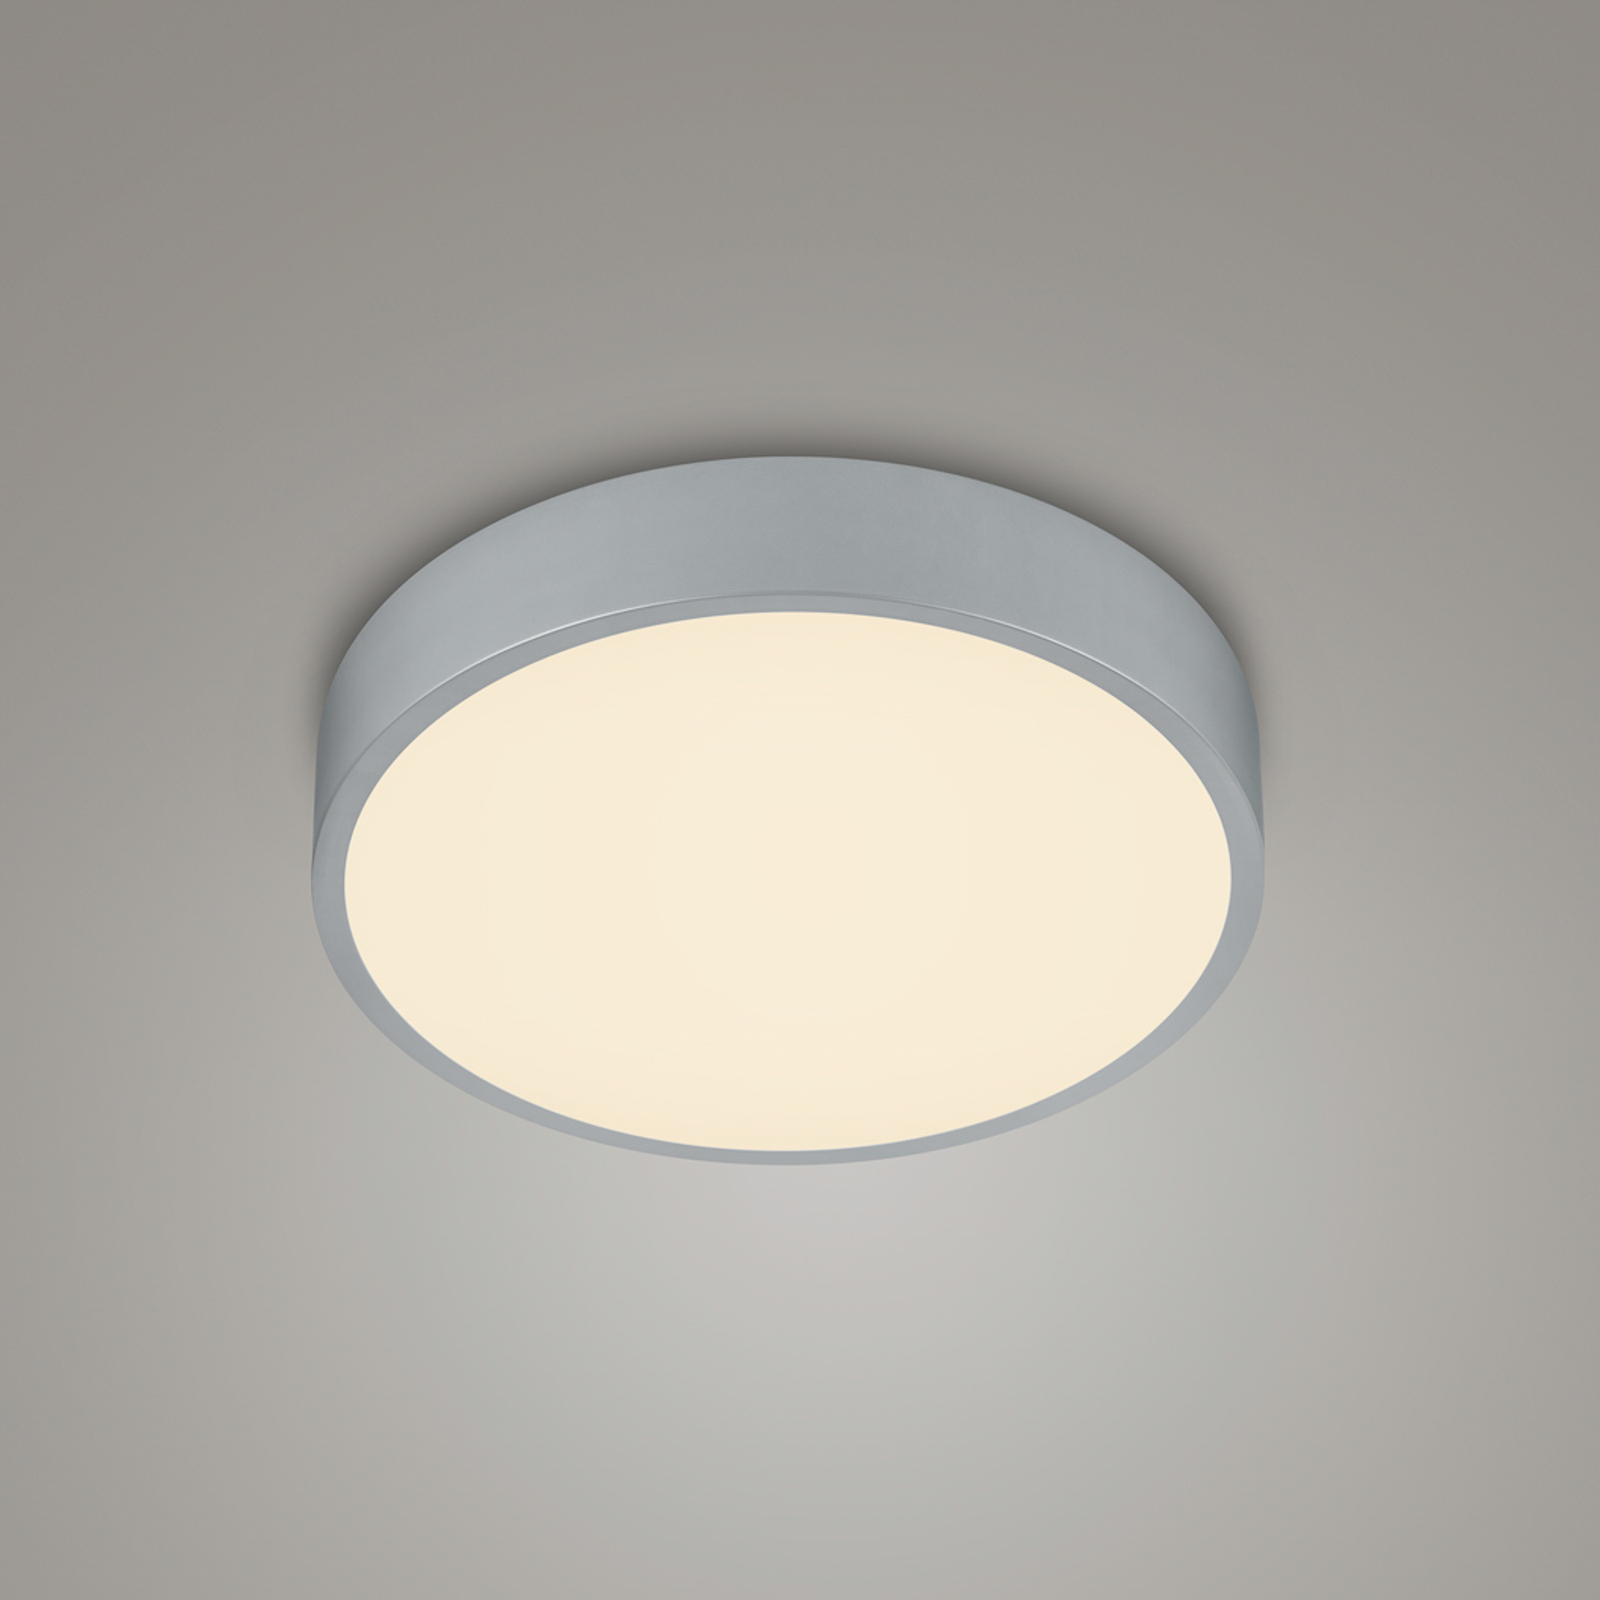 LED ceiling lamp Waco, CCT, Ø 31 cm, titanium